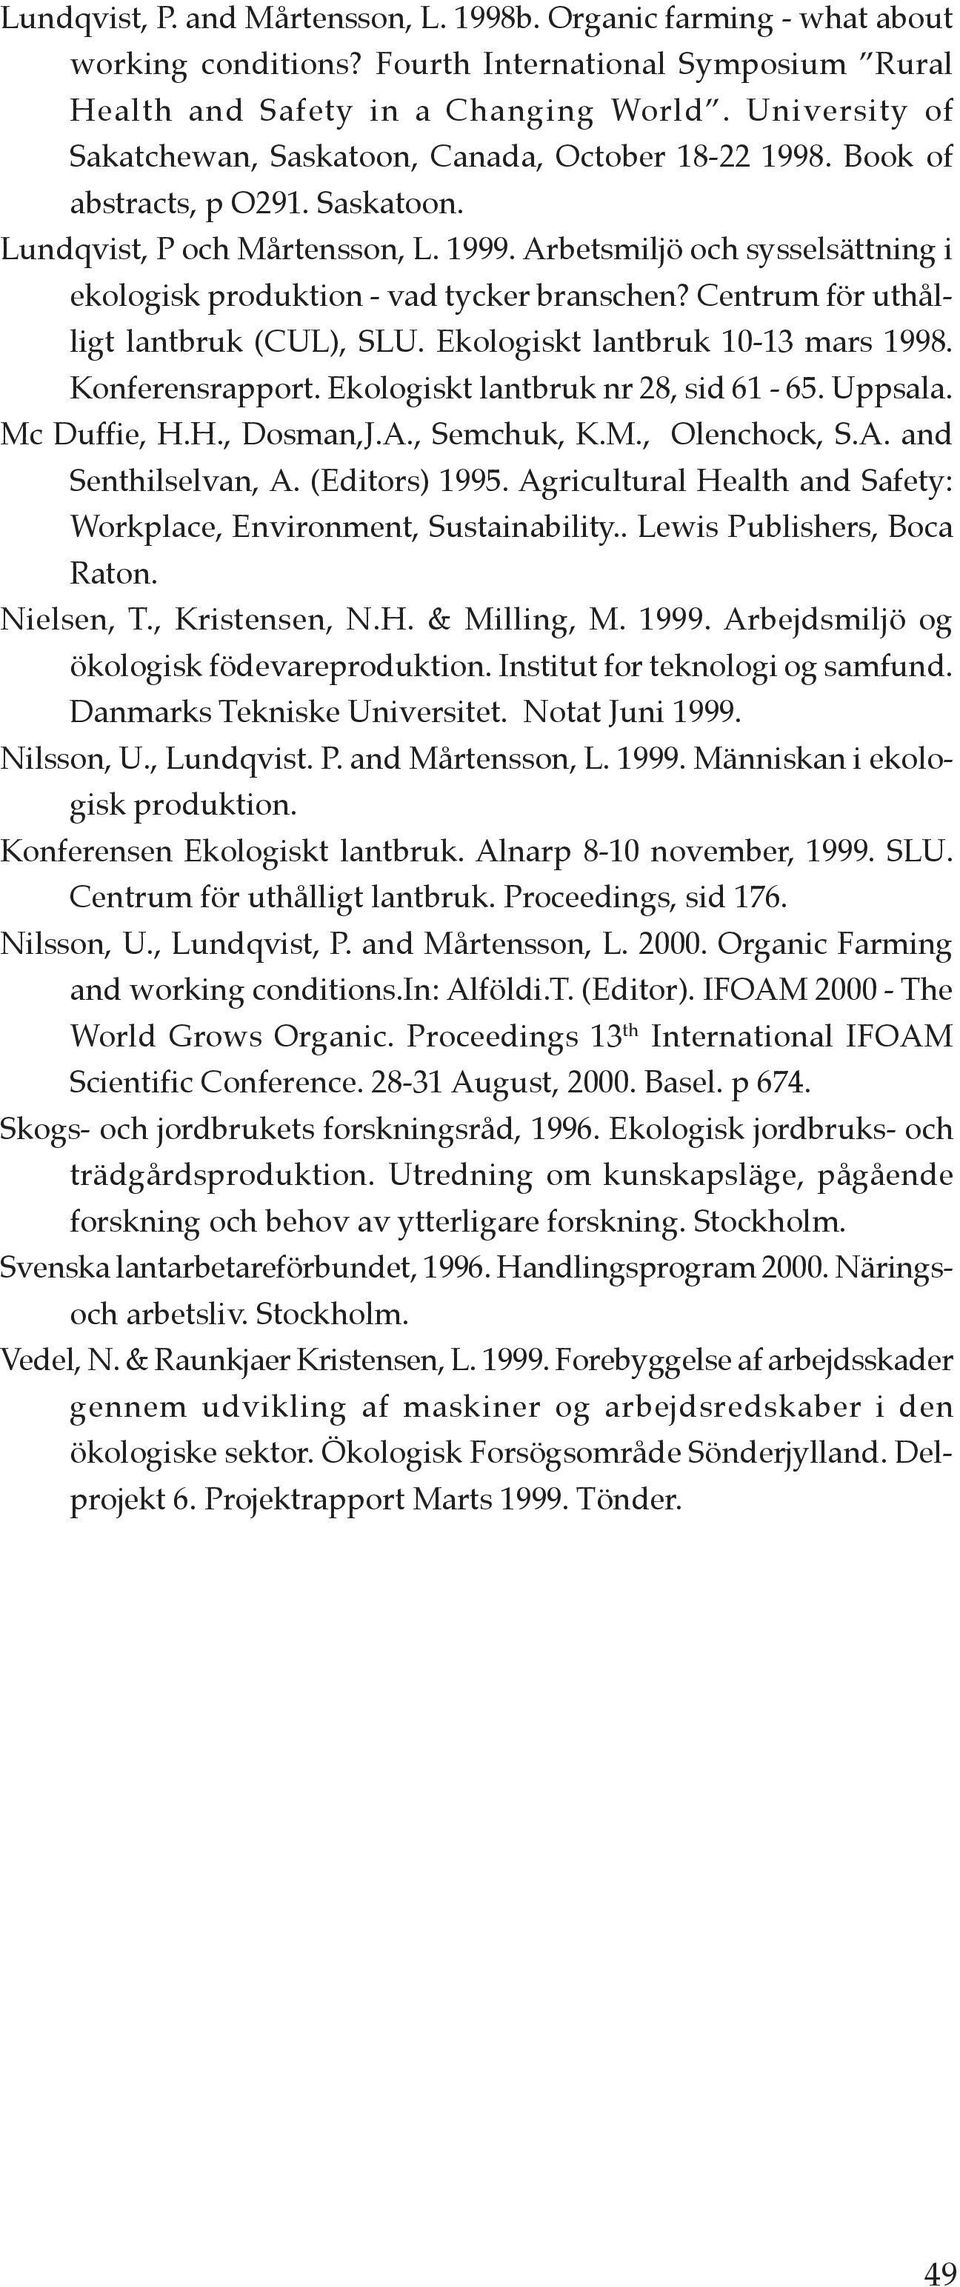 Arbetsmiljö och sysselsättning i ekologisk produktion - vad tycker branschen? Centrum för uthålligt lantbruk (CUL), SLU. Ekologiskt lantbruk 10-13 mars 1998. Konferensrapport.